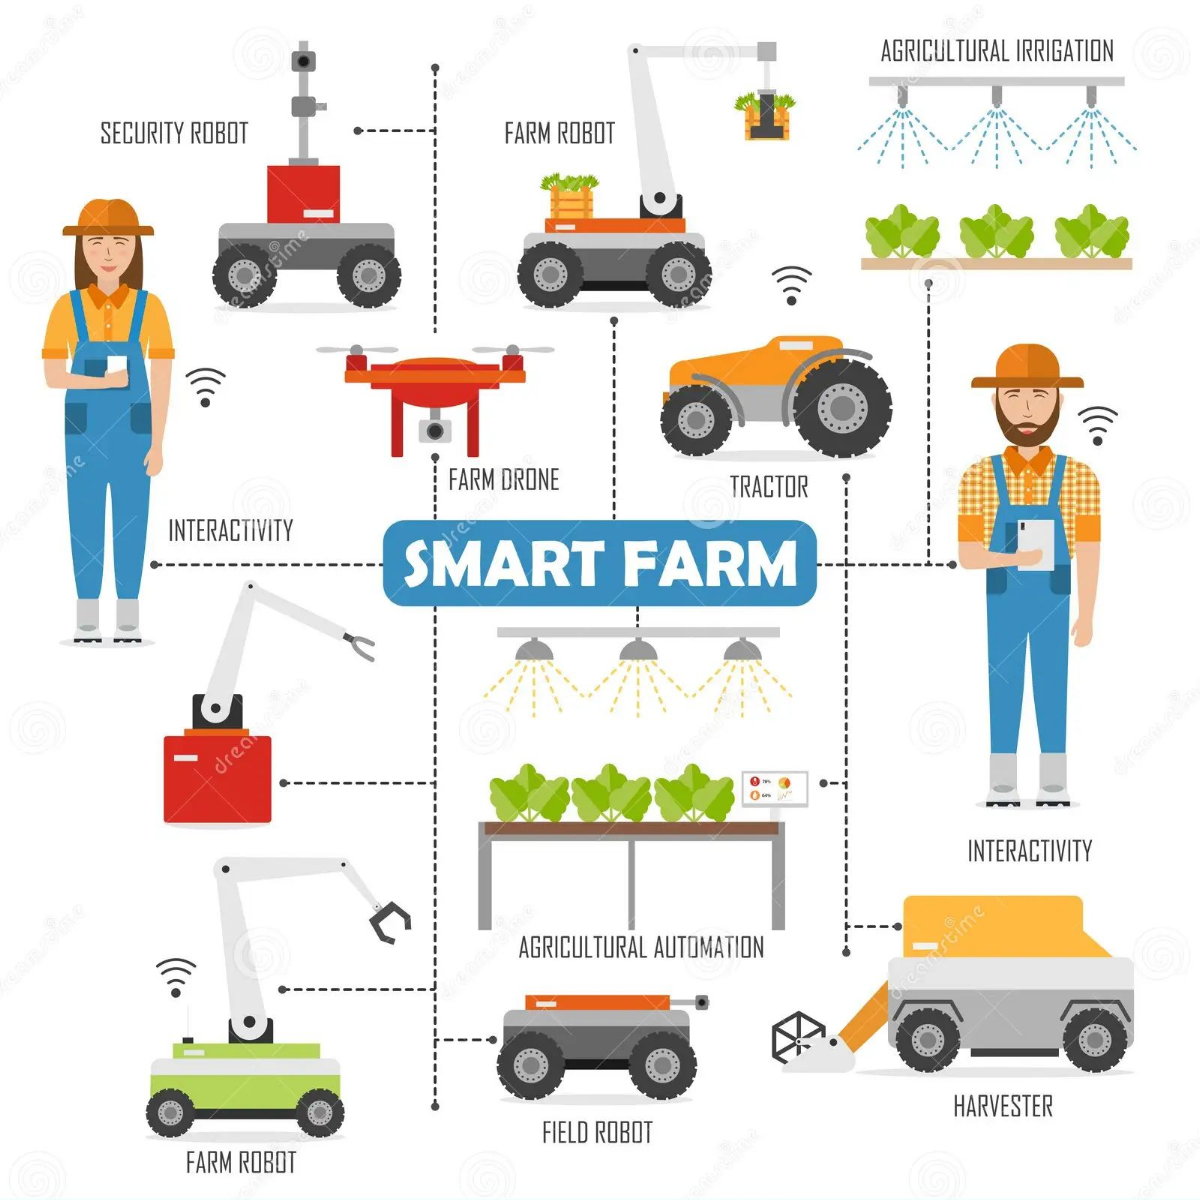 5 Maquinaria para automatizacion en agricultura robotica agrico - Haga un click en la imagen para cerrar